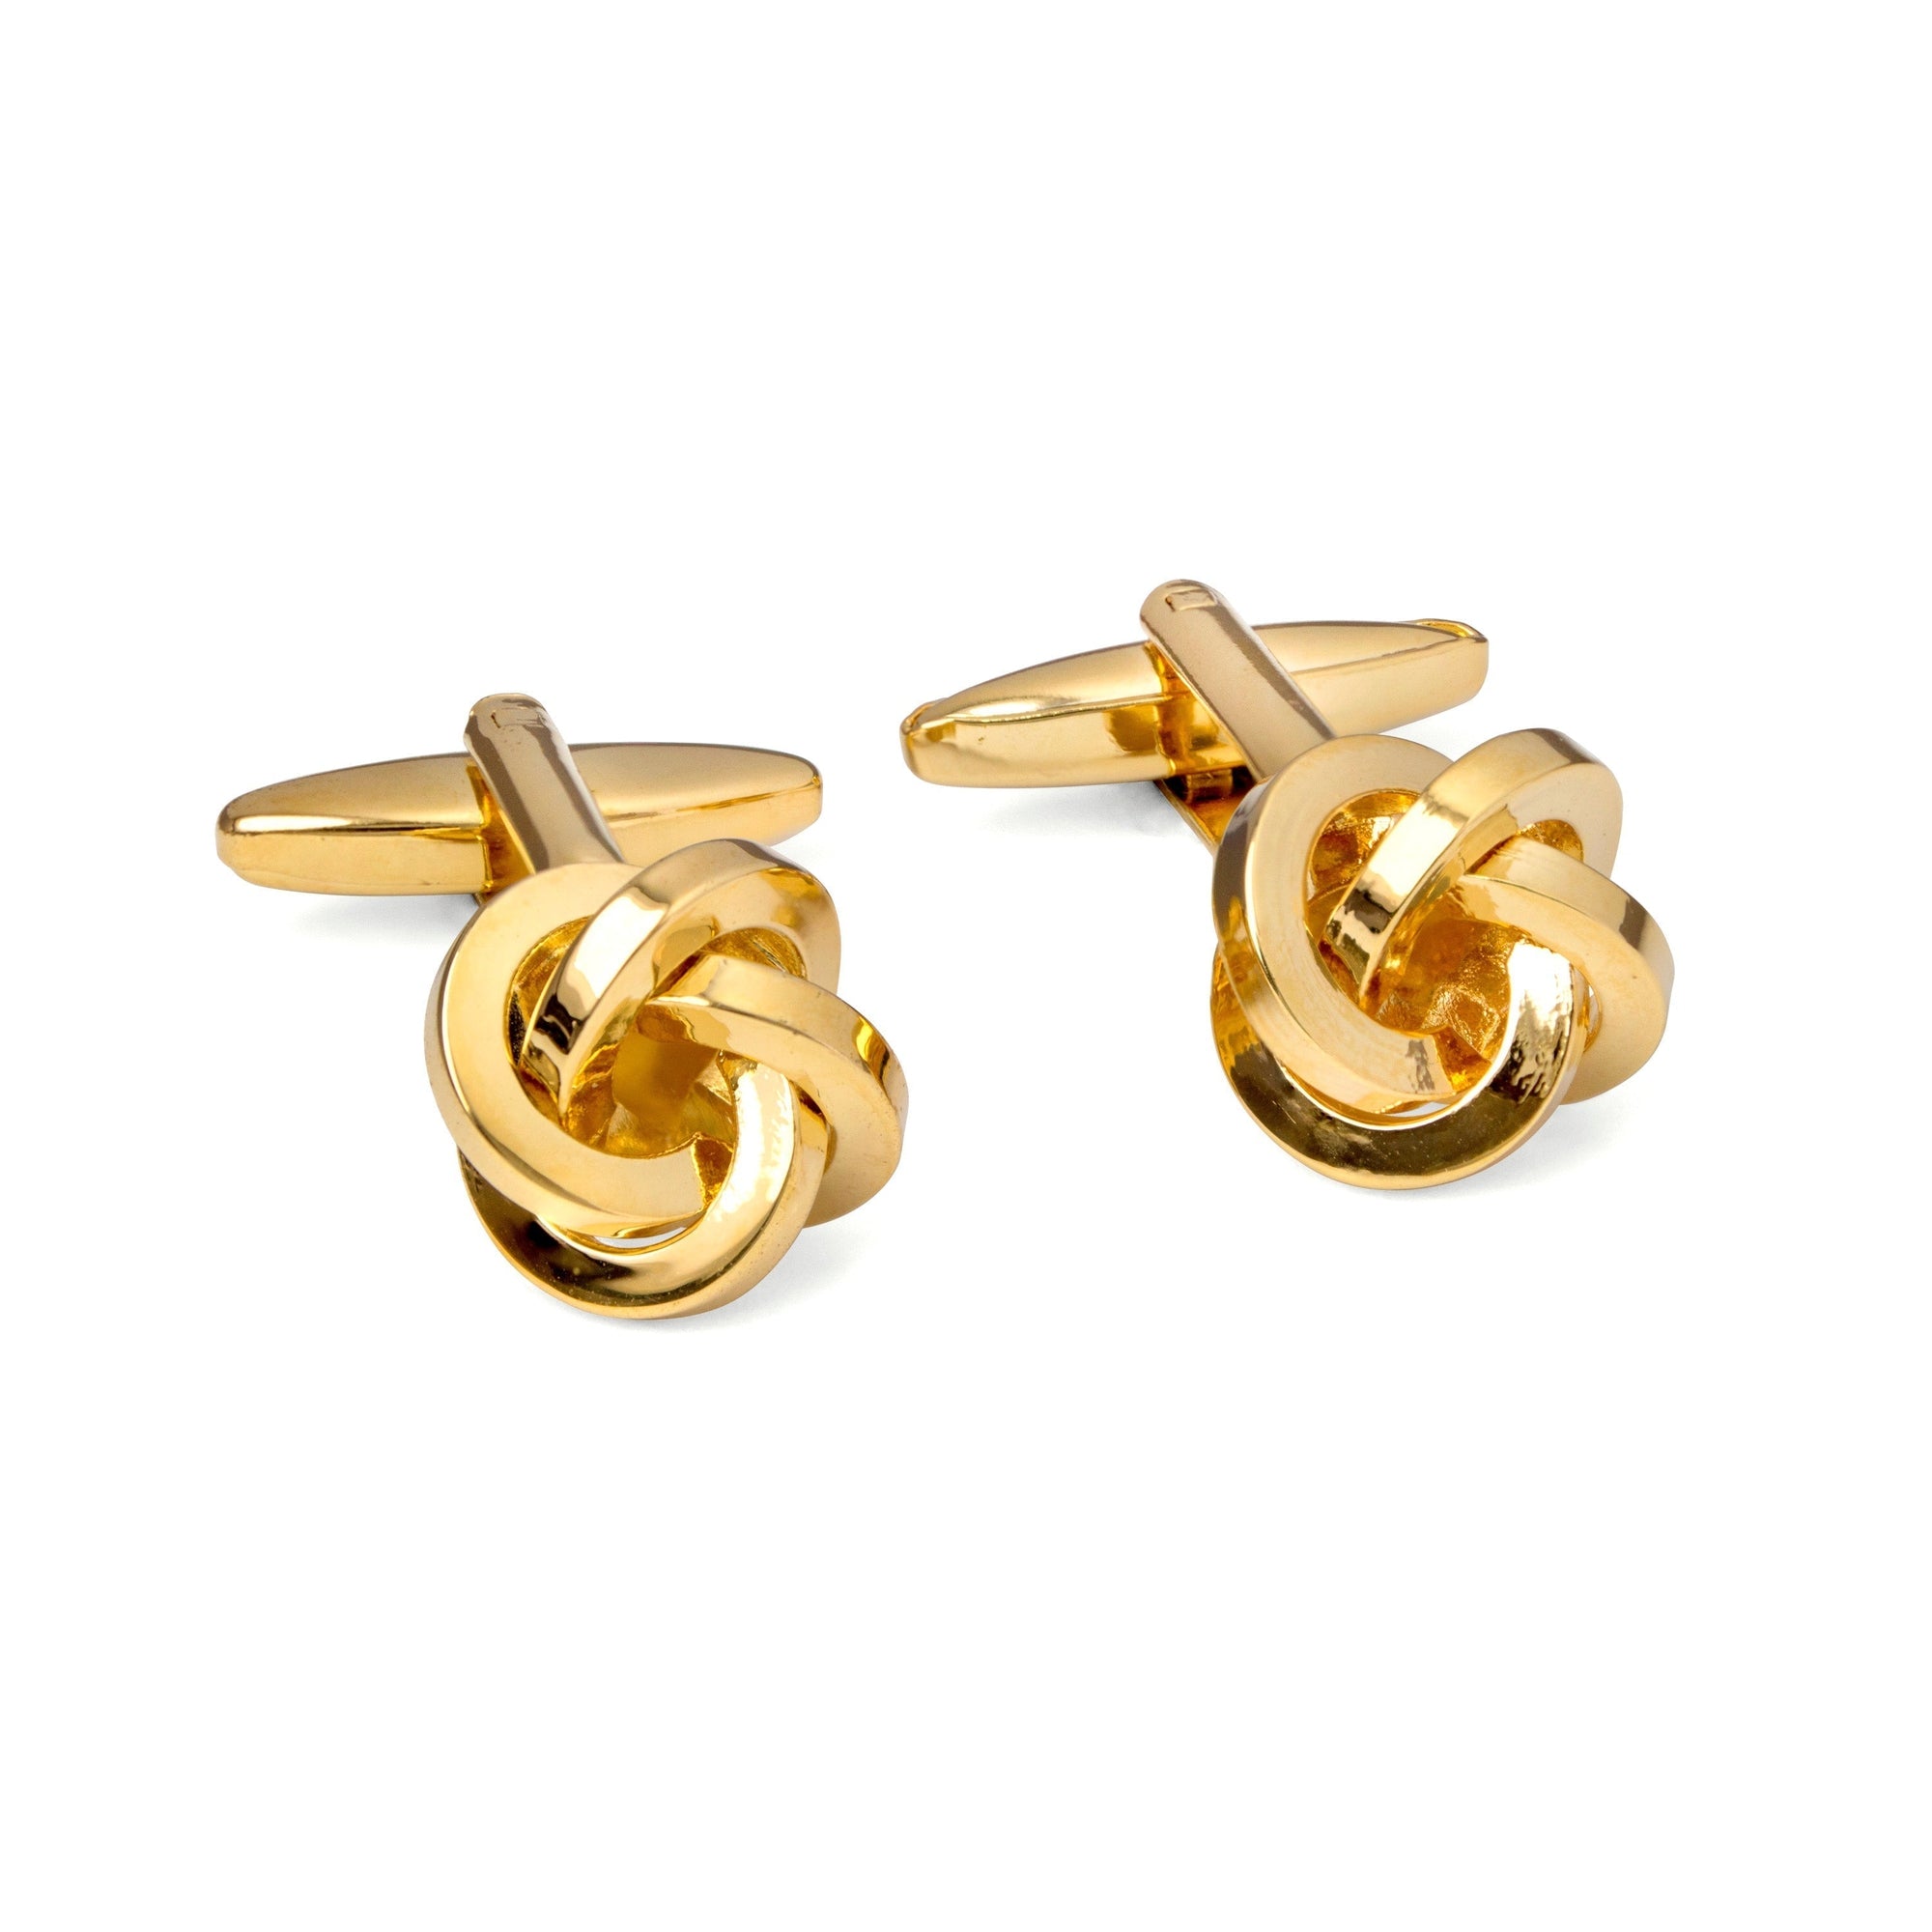 Knot Gold-toned brass cufflinks F-Cufflinks.com.sg